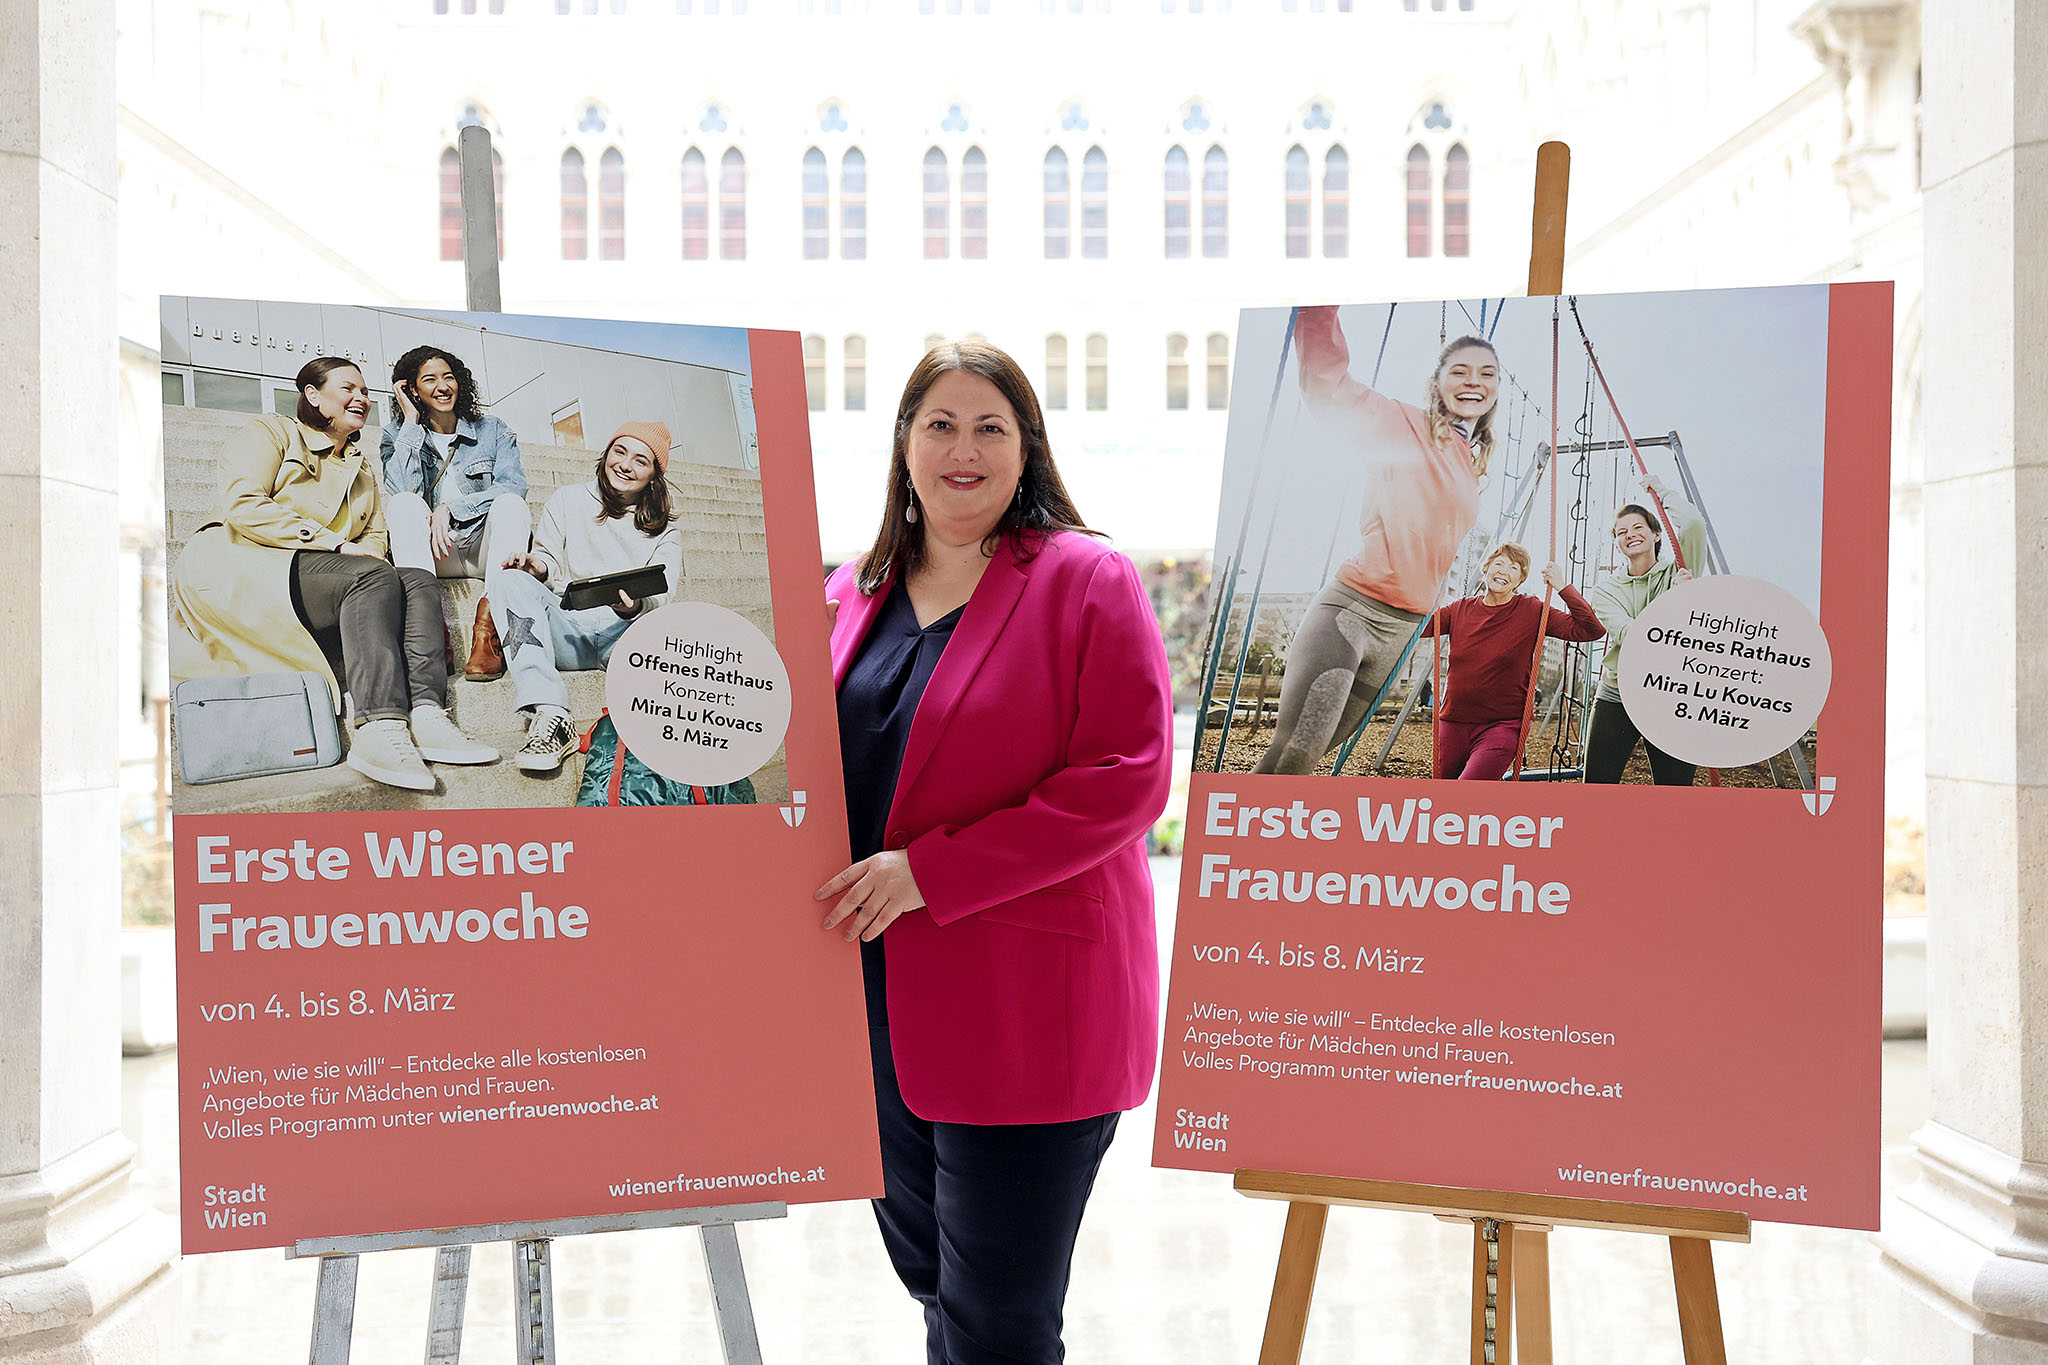 Heute startet die erste Wiener Frauenwoche!